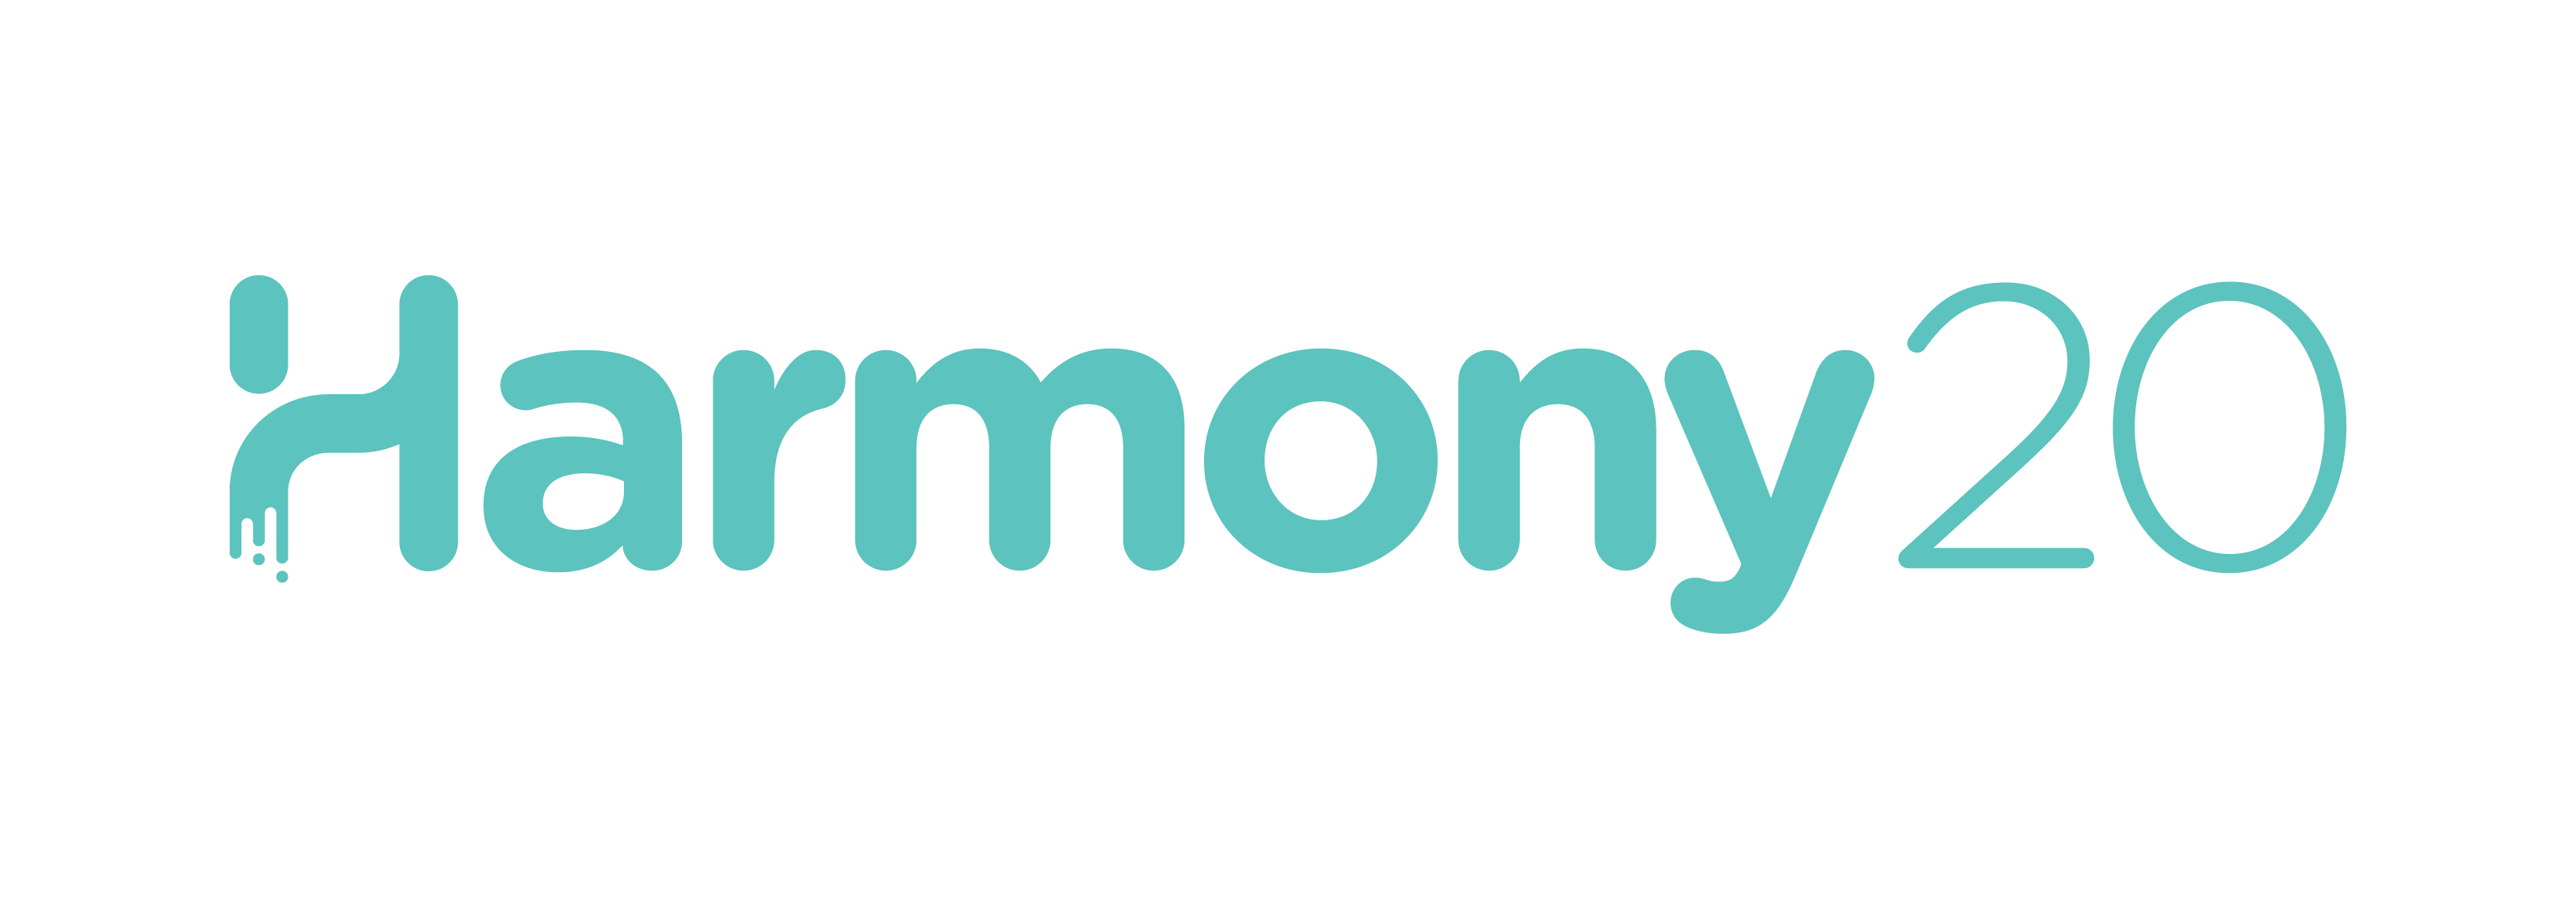 toon boom harmony logo